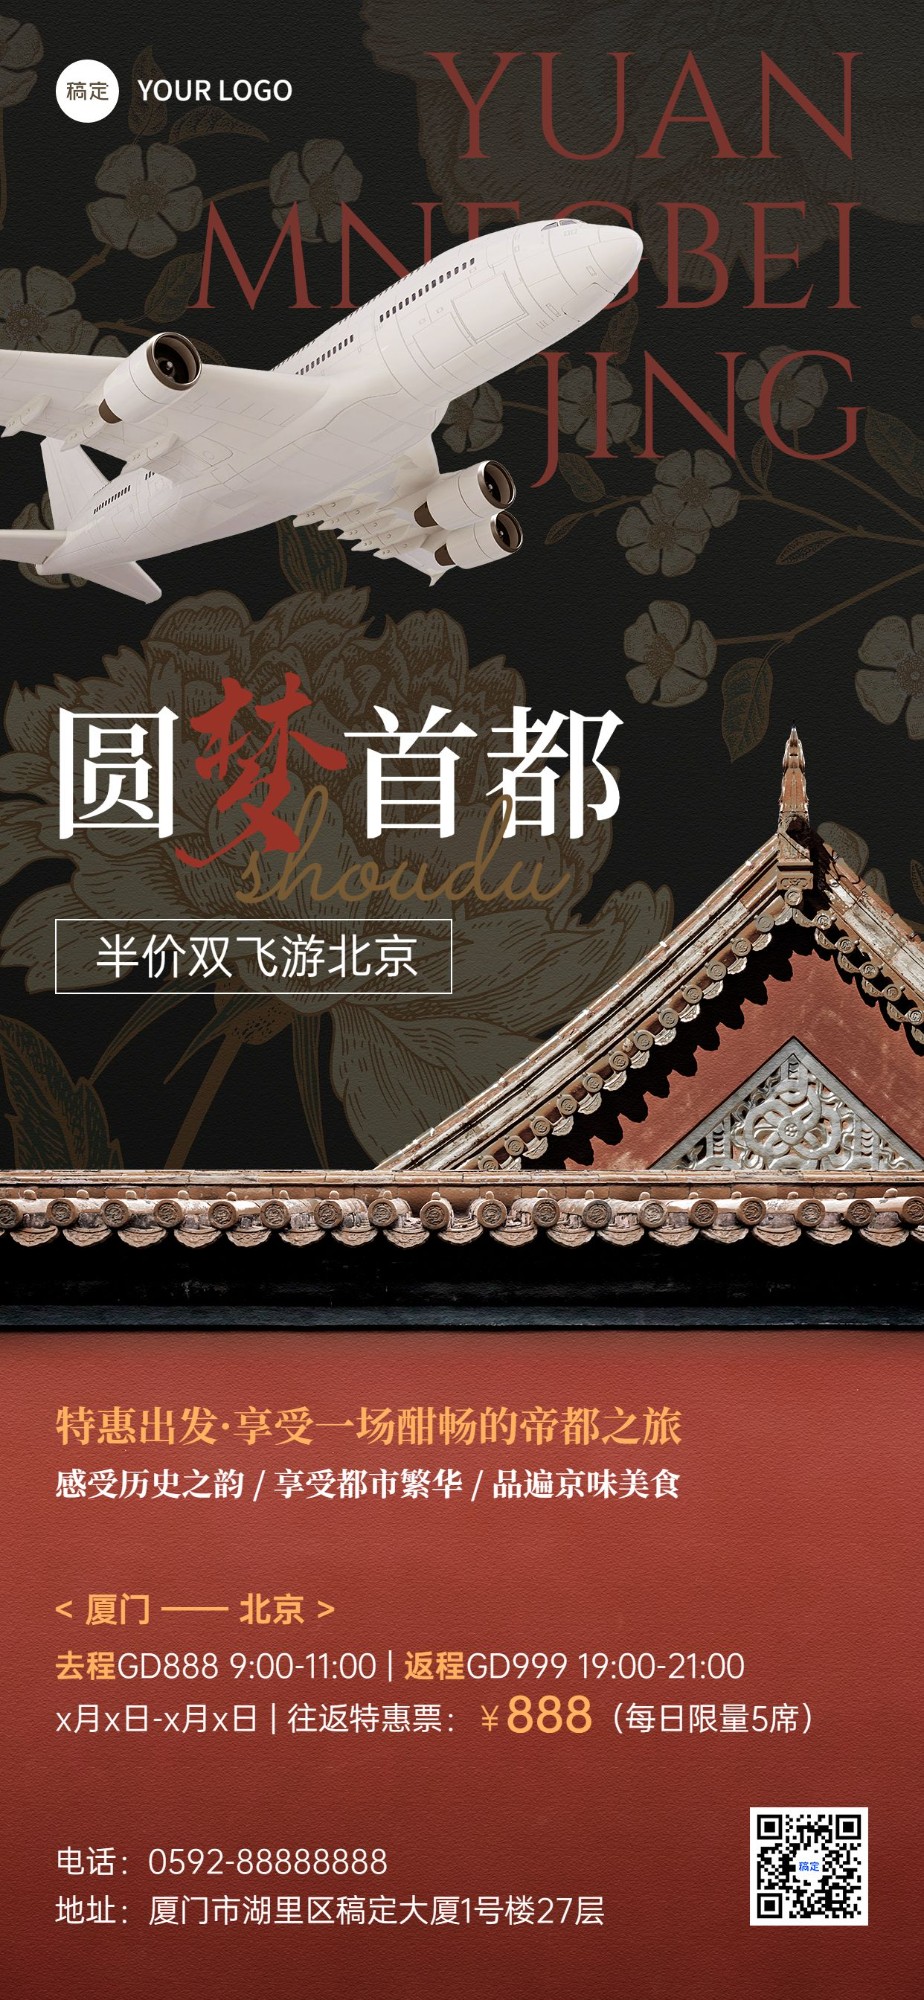 旅游出行北京旅游机票促销新中式风格全屏竖版海报预览效果